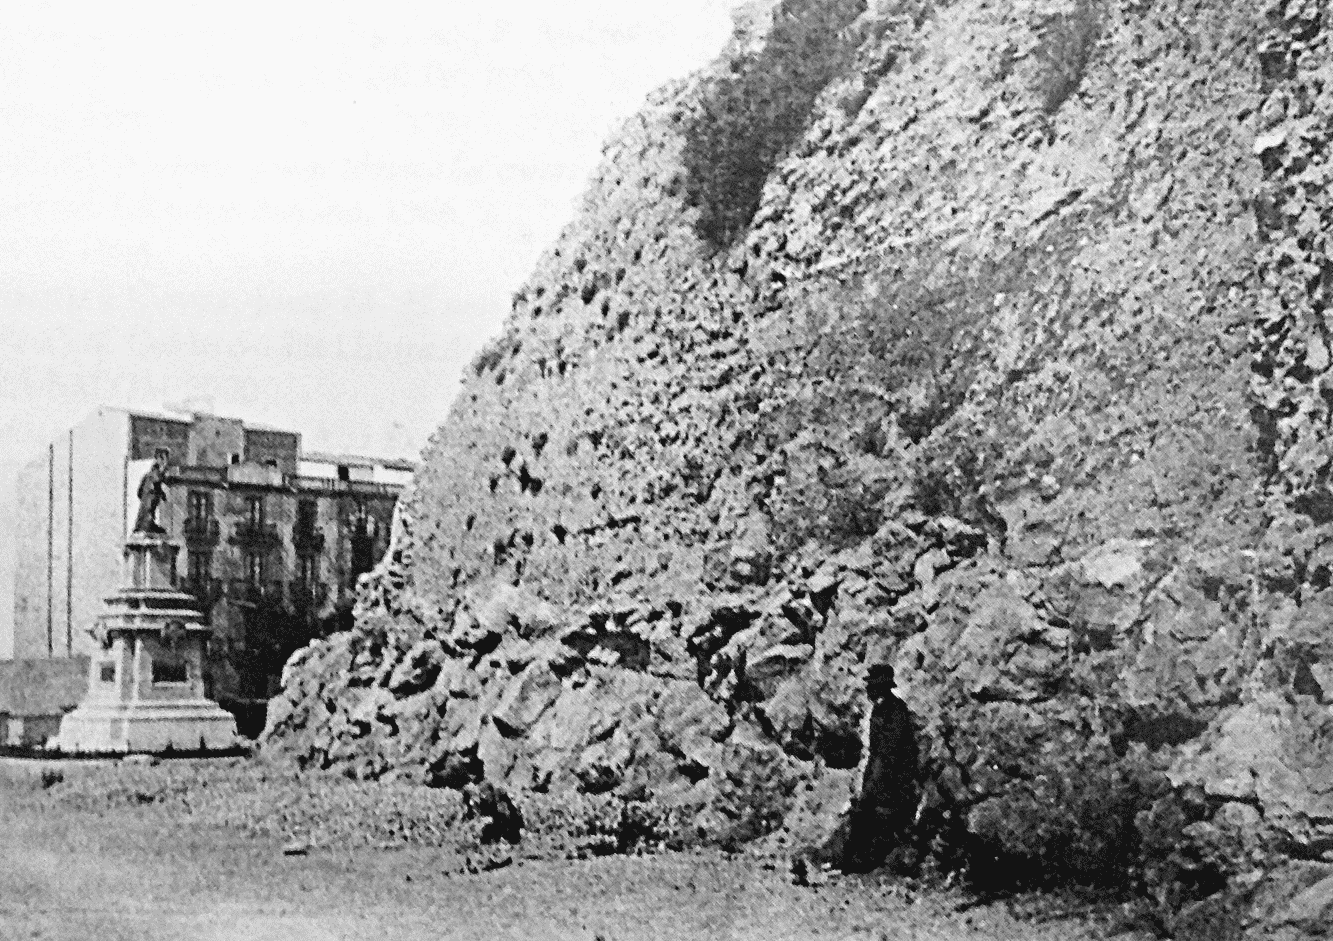 Foto scattata intorno al 1890 circa che mostra il paesaggio tra il Passeig de les Palmeres e l’attuale Rambla Nova, zona situata poco a sud del limite meridionale del circo romano